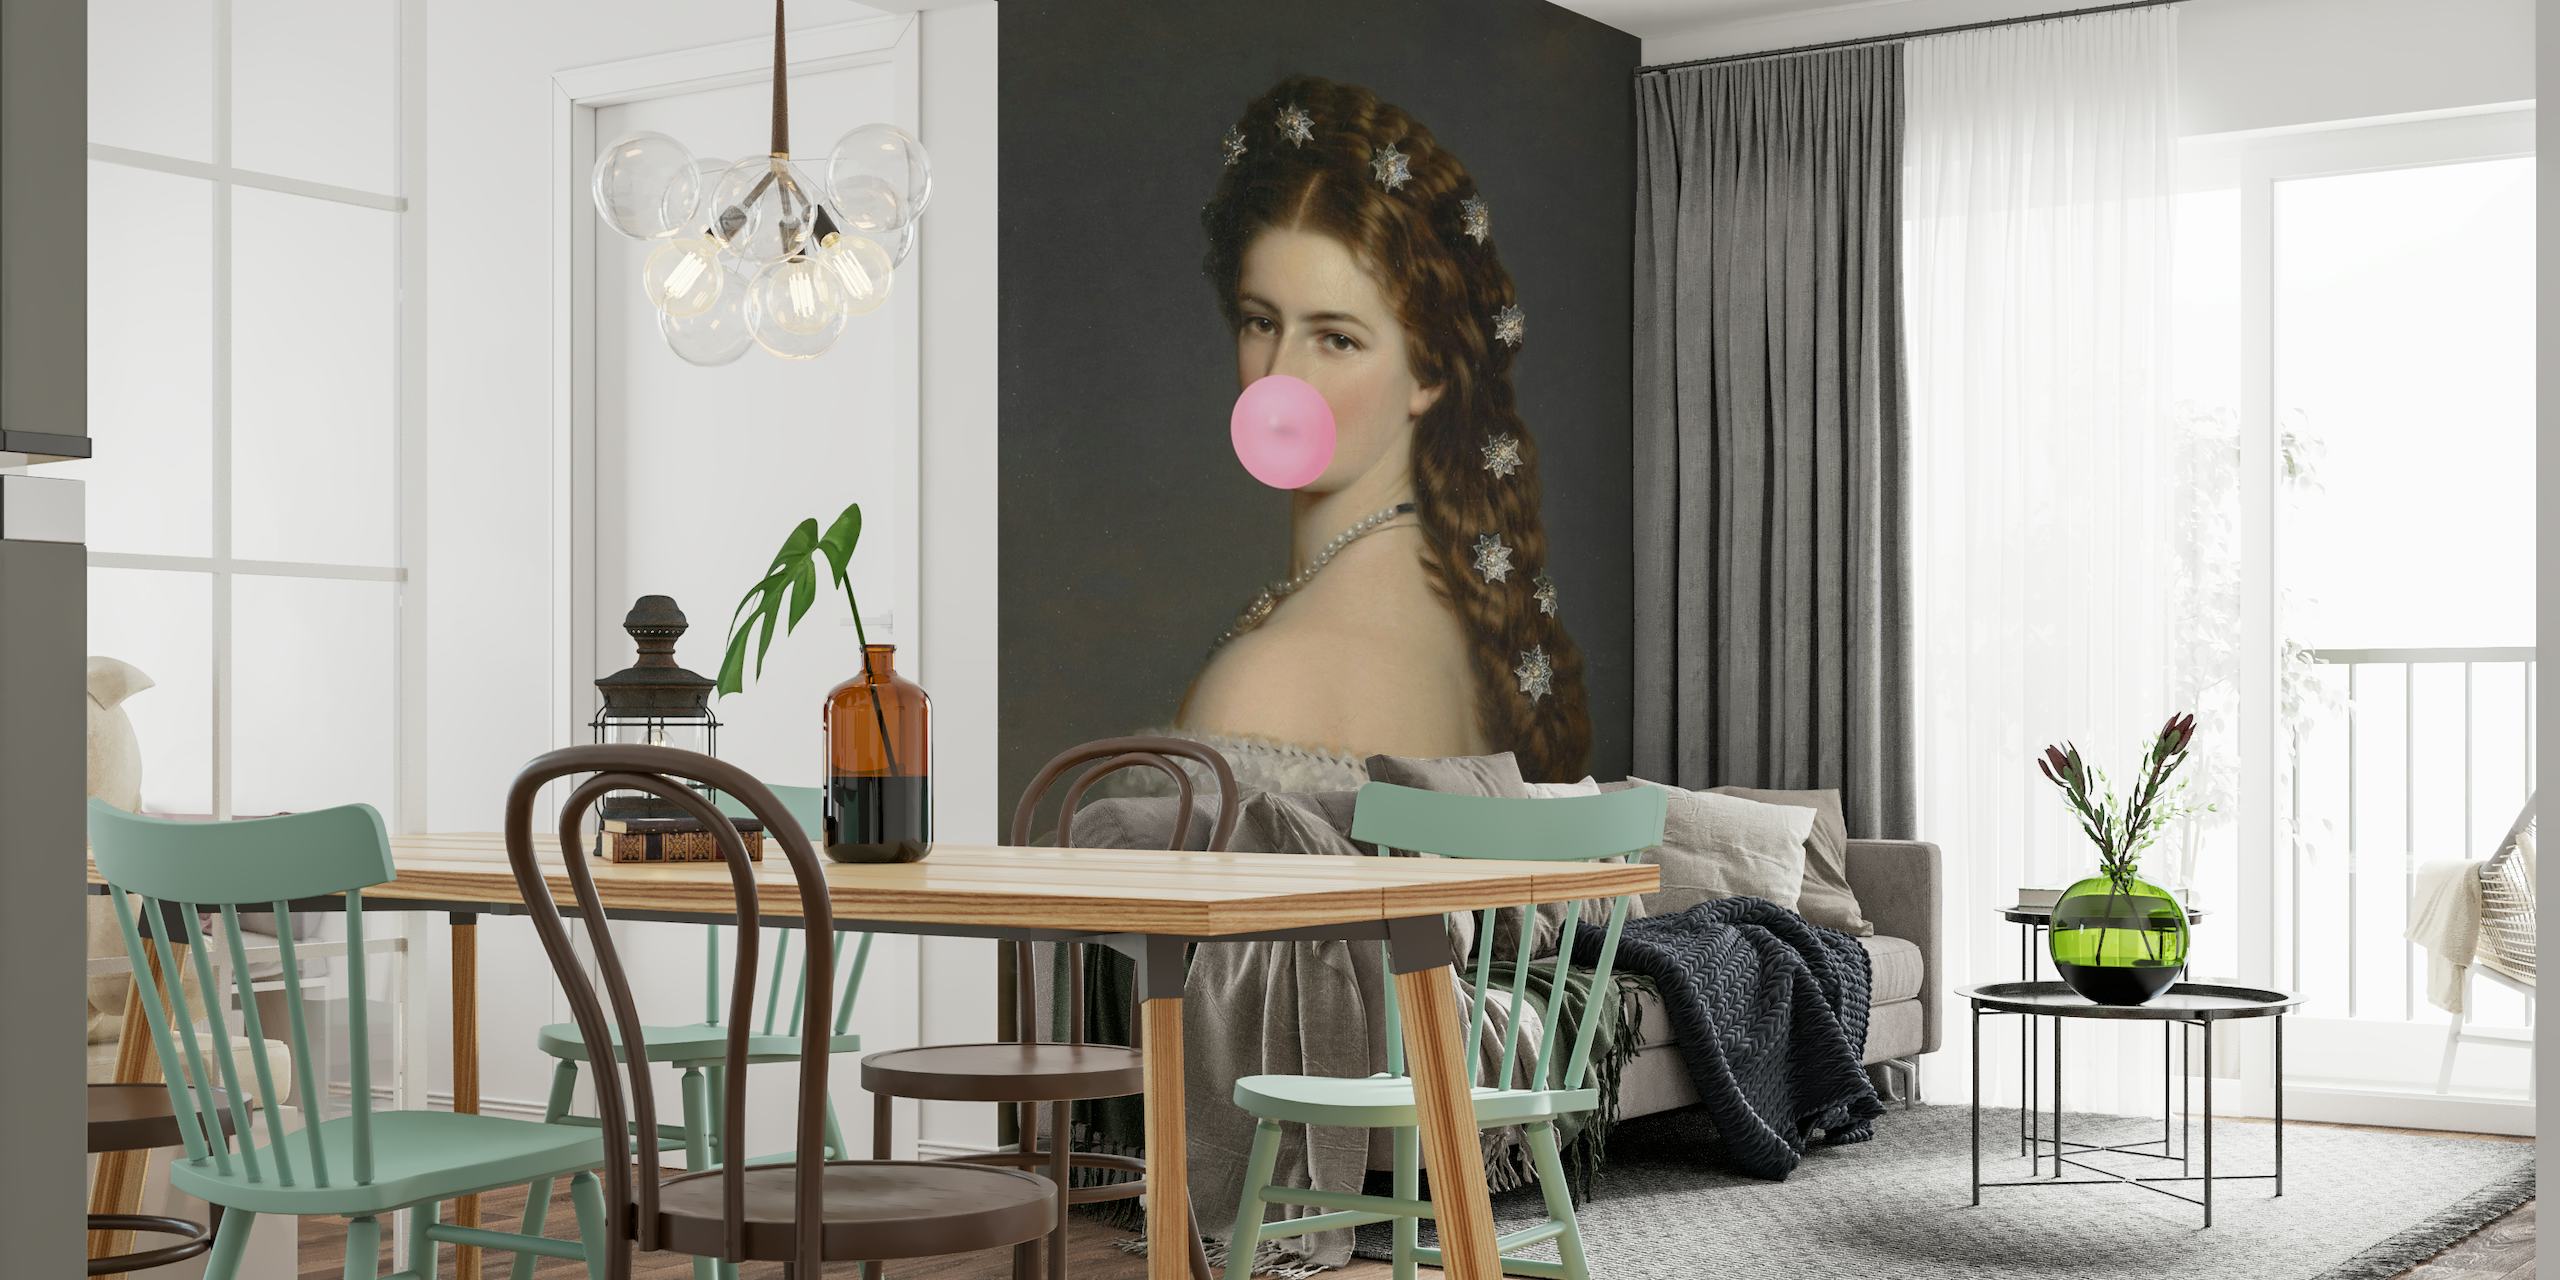 Zidna slika carice Sisi kako puše balon od žvakaće gume, spoj klasičnog i neobičnog dizajna